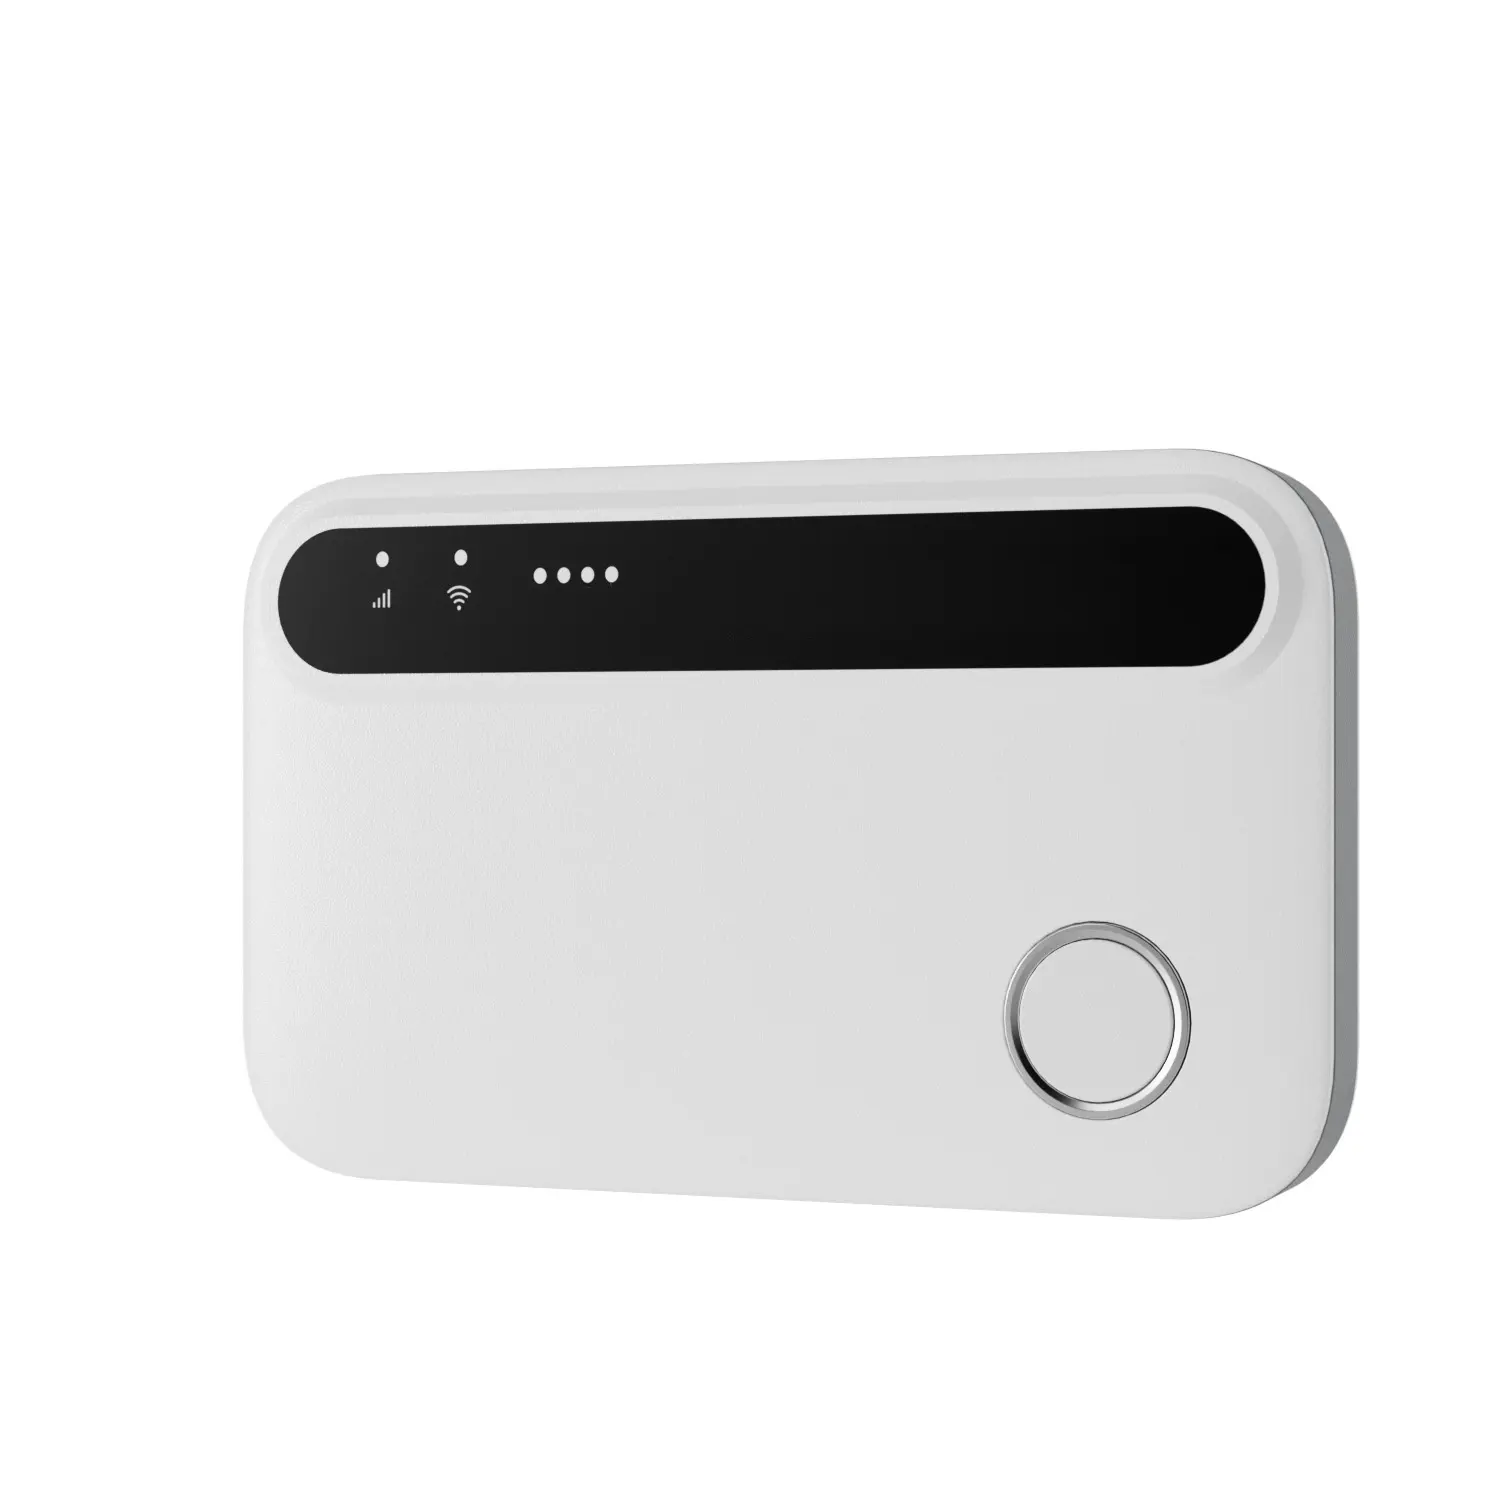 MF32 4G 3G بطاقة جهاز توجيه الجيب مجاني 2100mAh المحمولة واي فاي للسفر استخدام المنزل عالية الأداء اللاسلكية جهاز توجيه